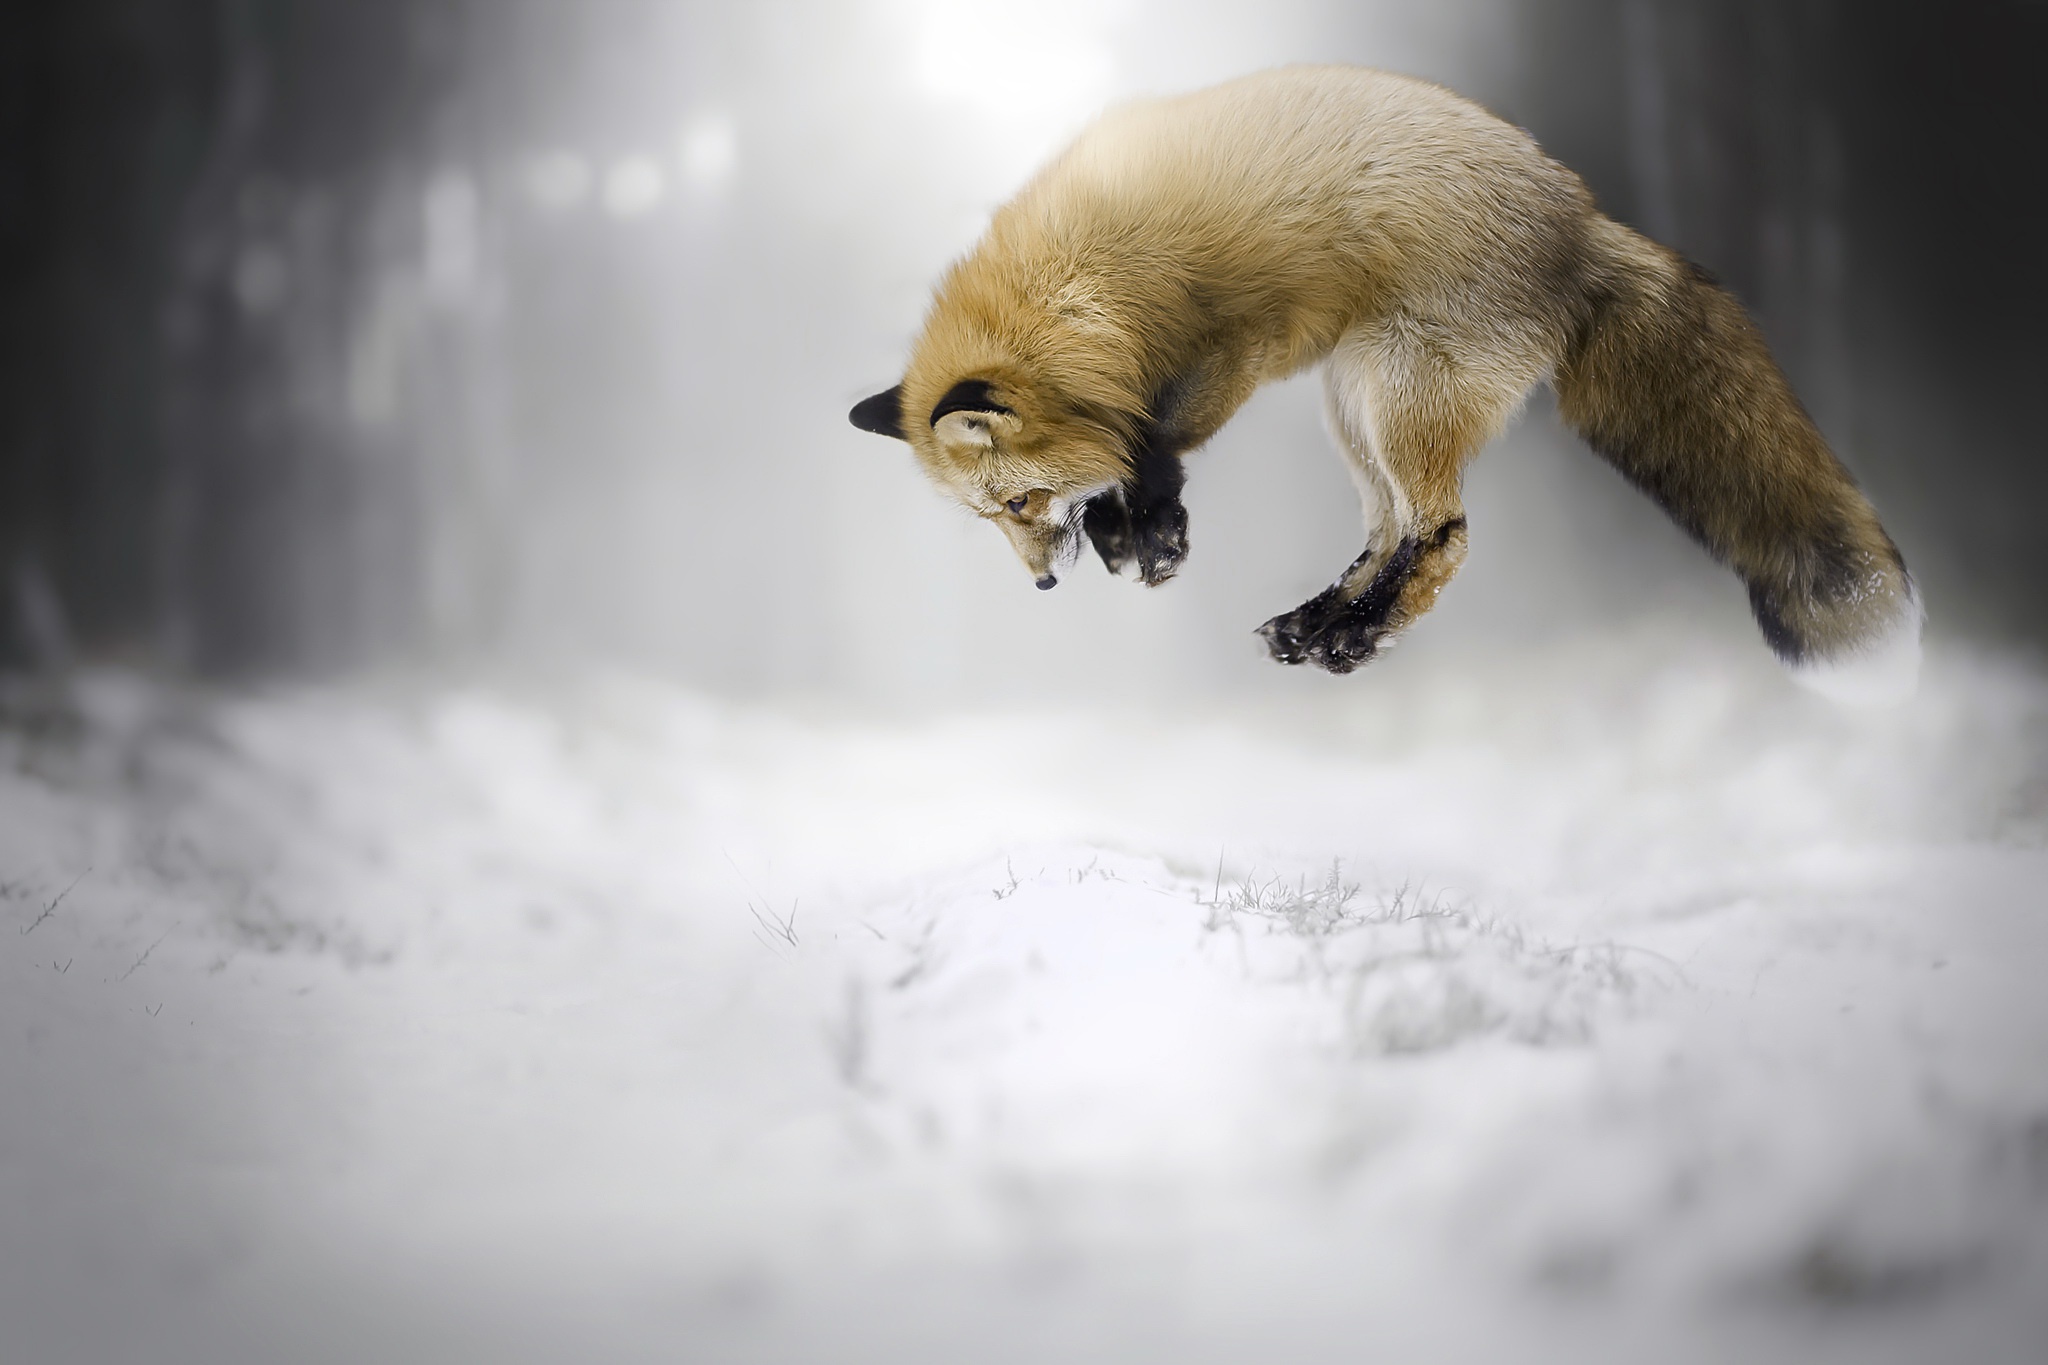 Million fox. Лиса мышкует. Лисица в снегу. Мышкование лисы. Лиса мышкует зимой.